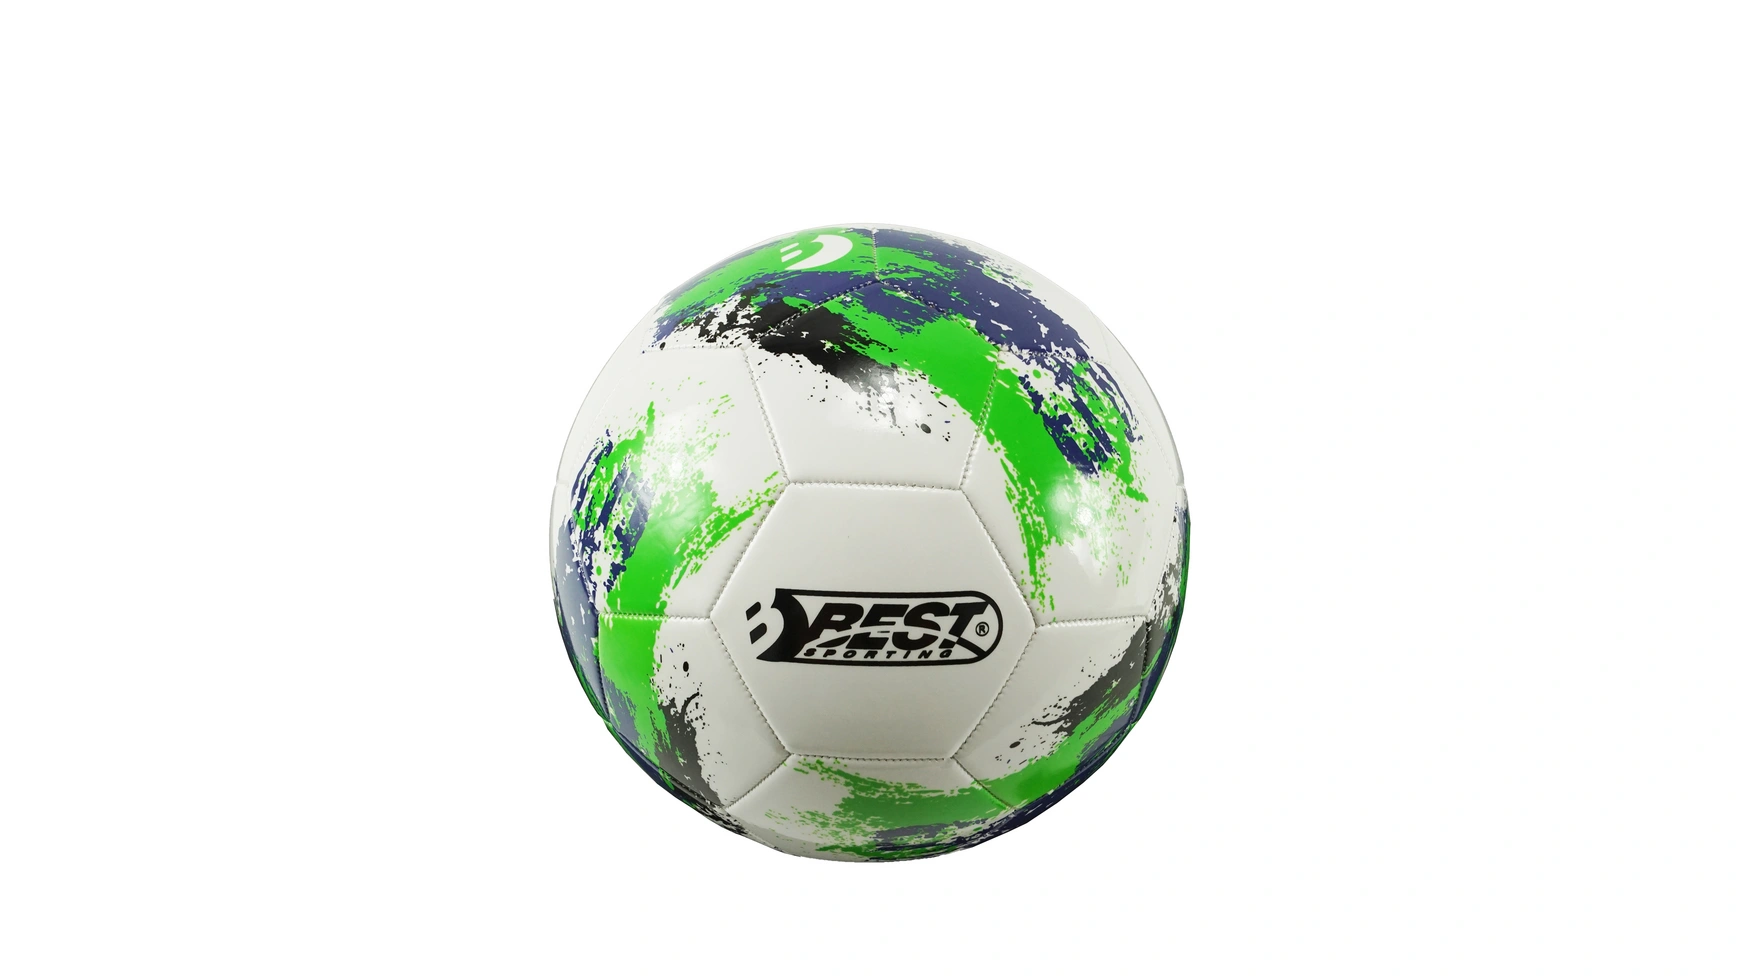 Best Футбольный мяч VALENCIA 10038 синий/зеленый юла светящаяся футбольный мяч зеленый